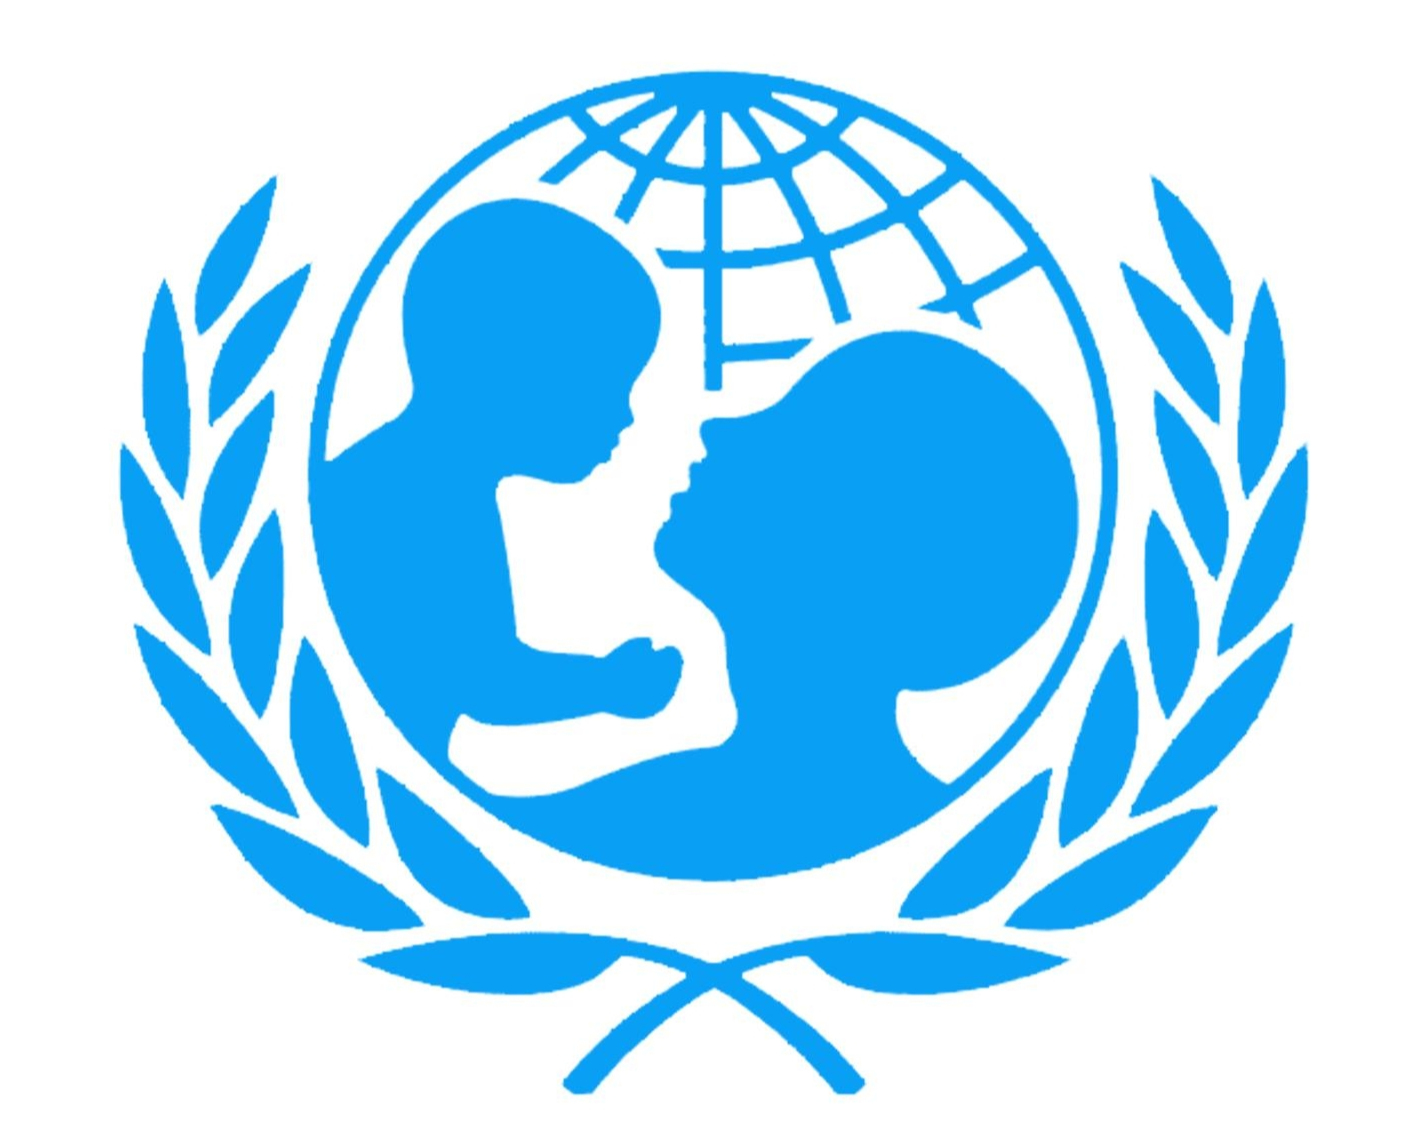 联合国儿童基金会logo图片